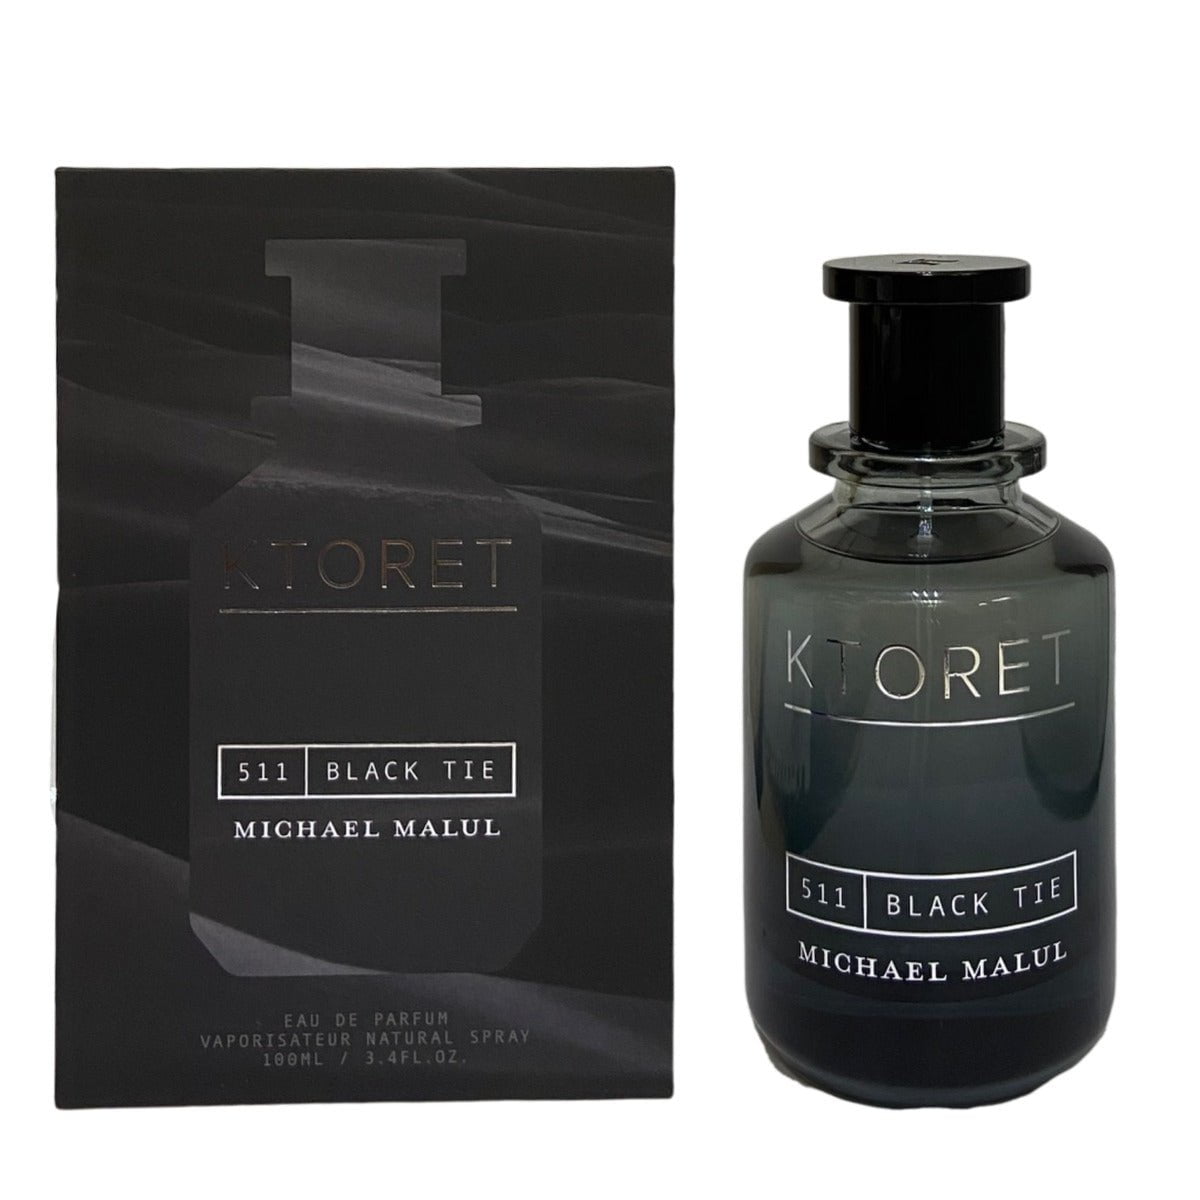 Ktoret Black Tie 511 Eau De Parfum Spray for Men by Michael Malul, Product image 1